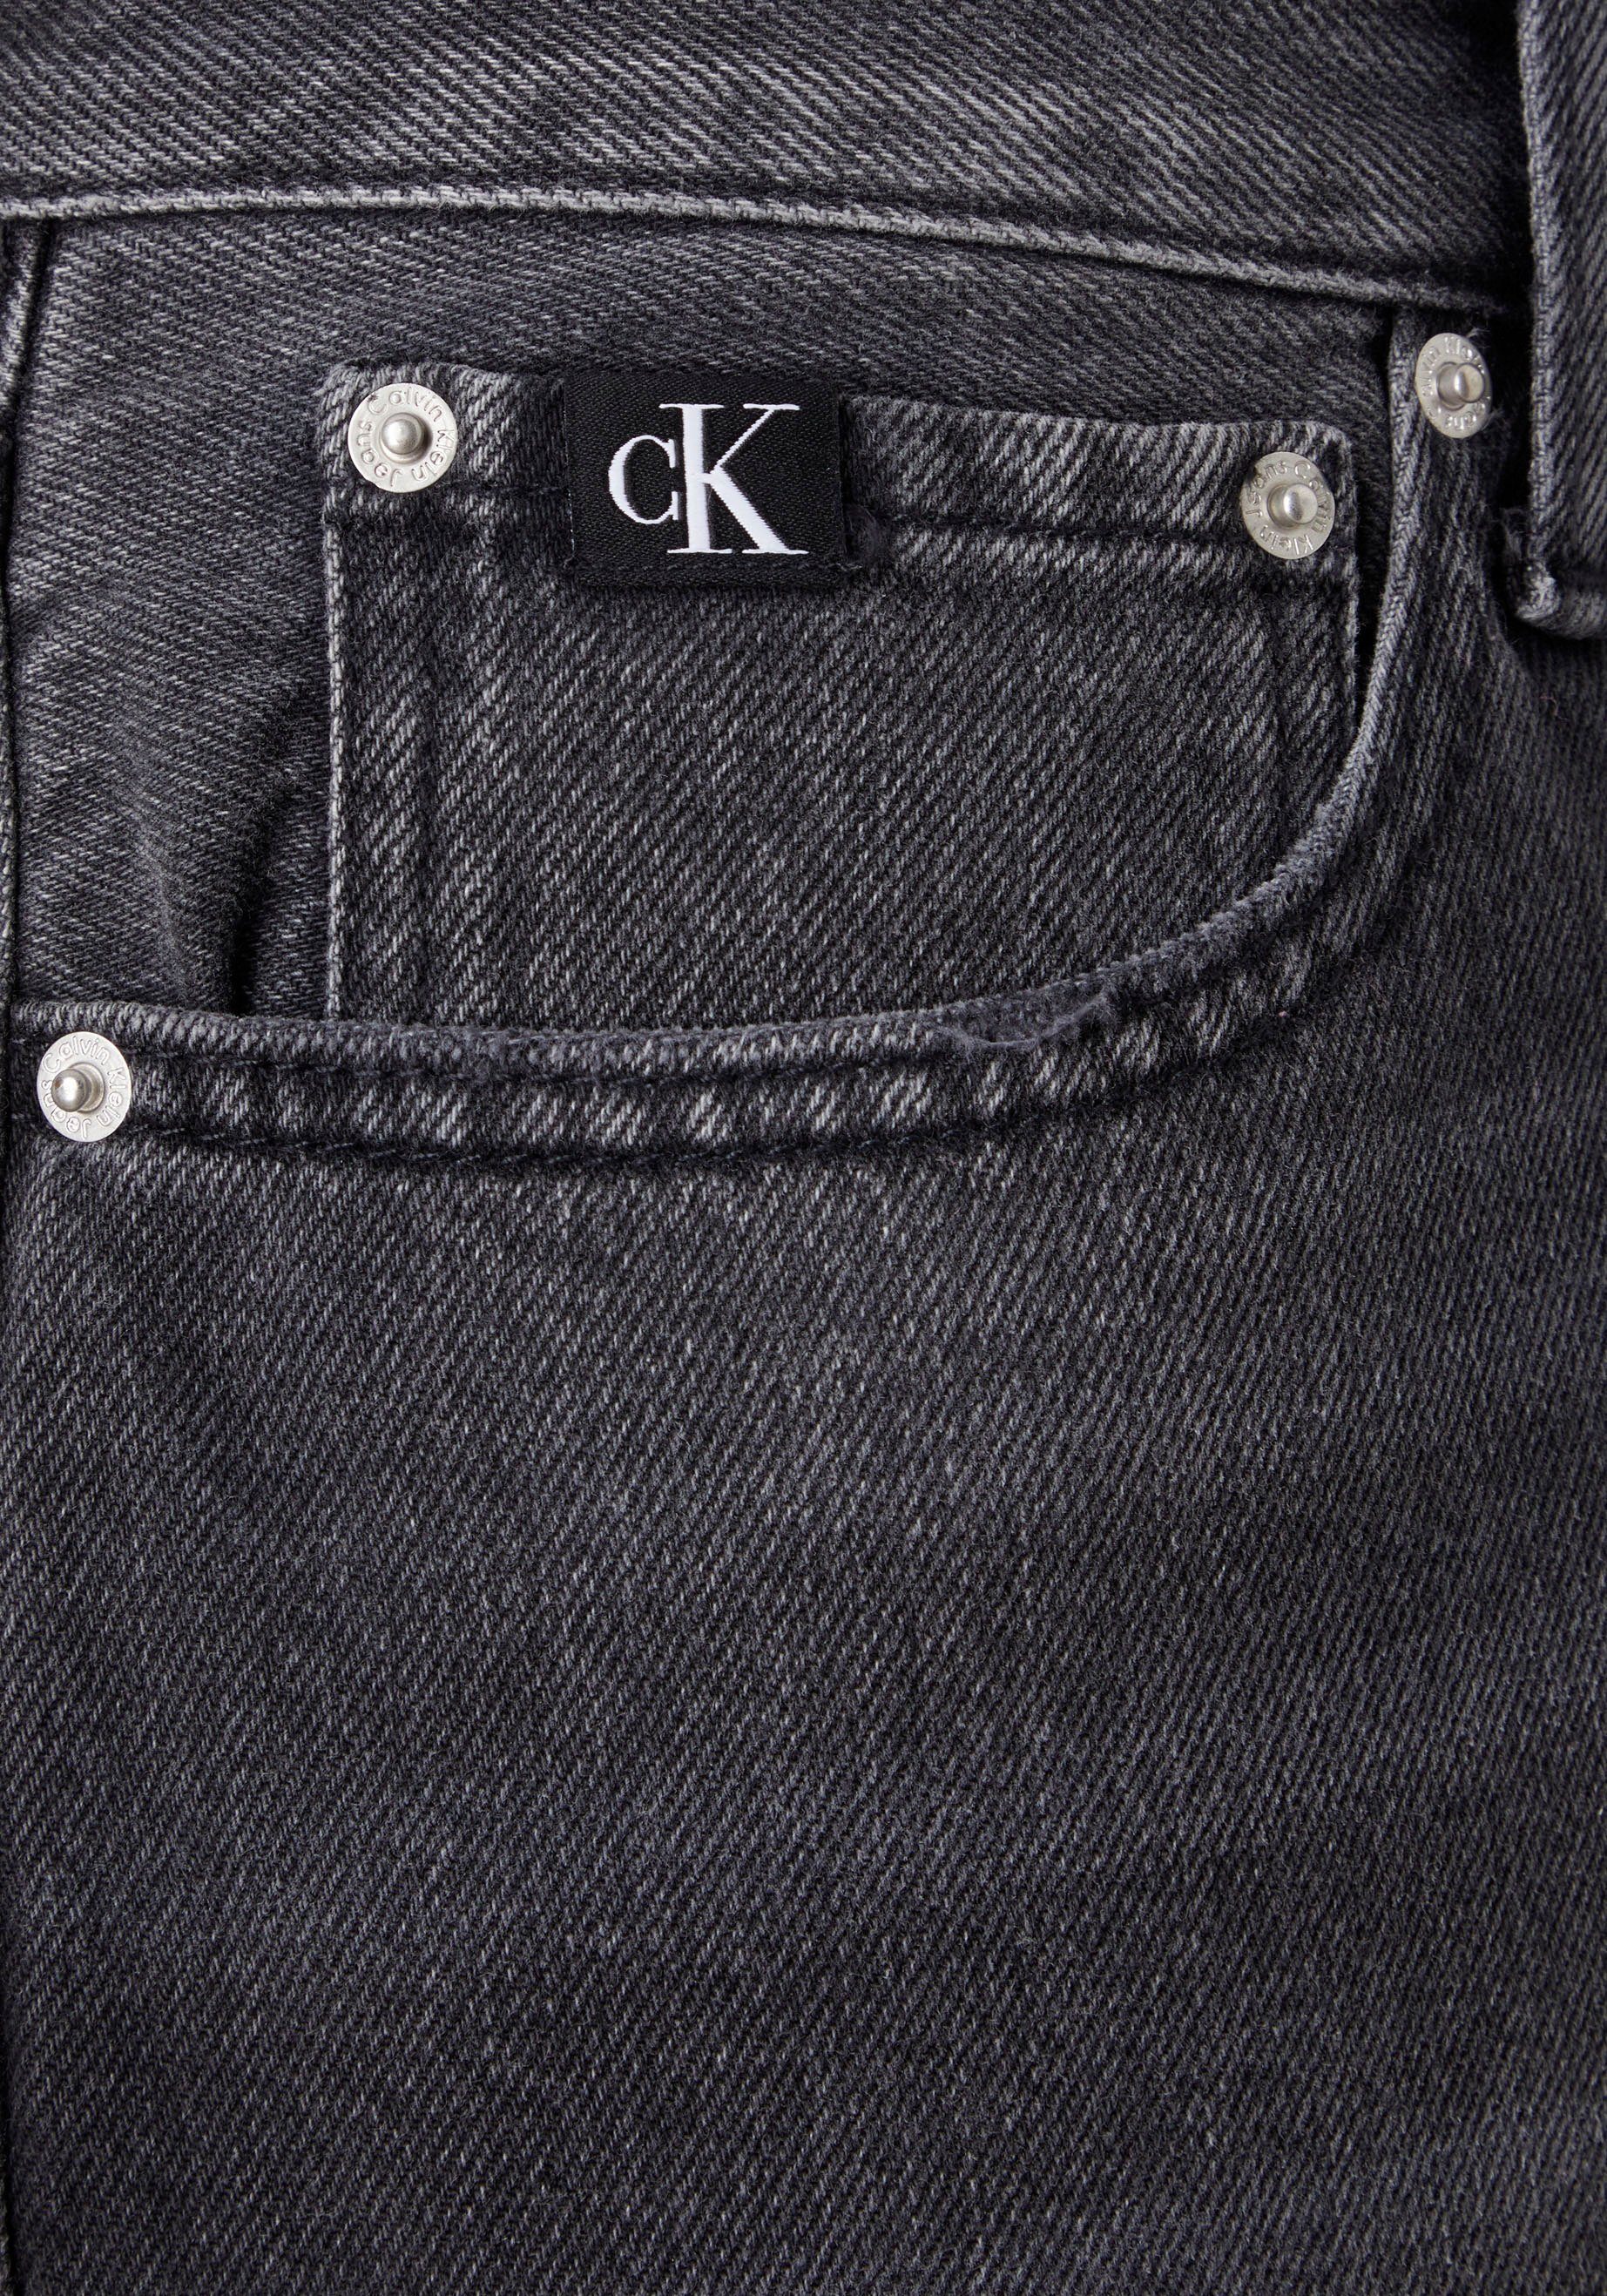 Calvin Klein Jeans Bermudas in 5-Pocket-Form Black Denim